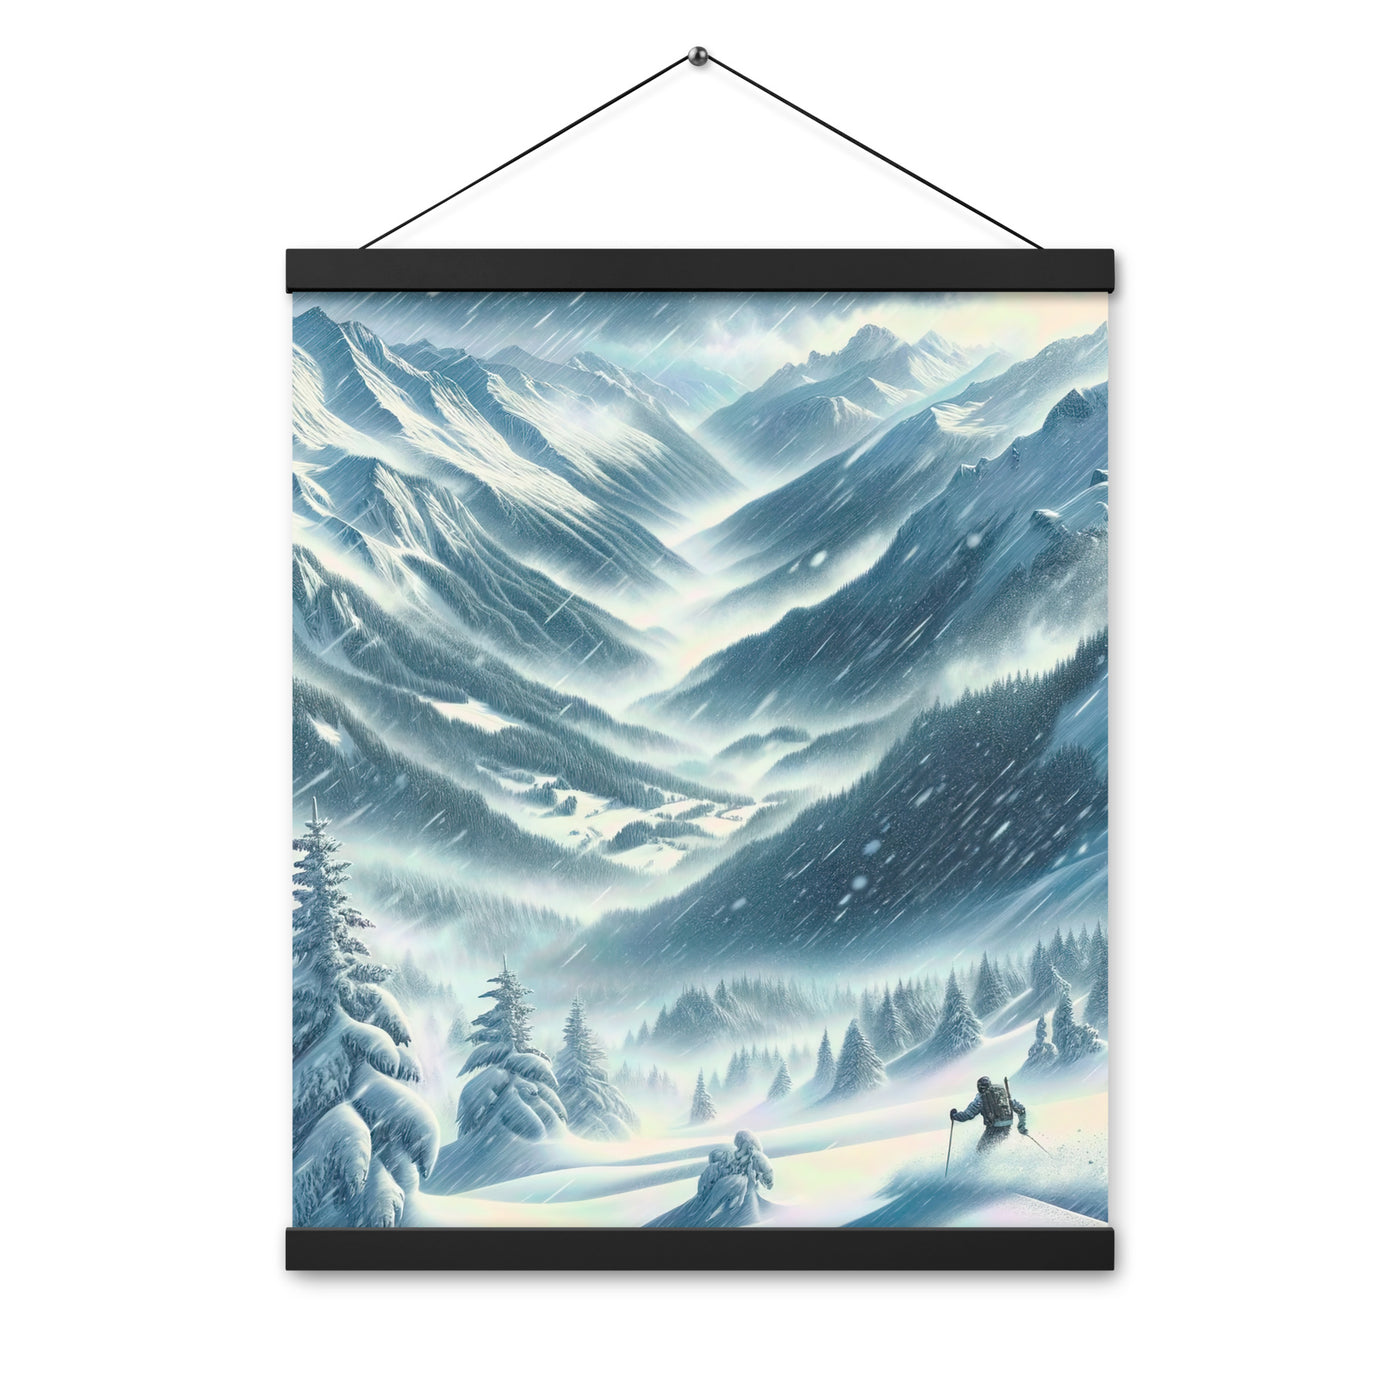 Alpine Wildnis im Wintersturm mit Skifahrer, verschneite Landschaft - Premium Poster mit Aufhängung klettern ski xxx yyy zzz 40.6 x 50.8 cm